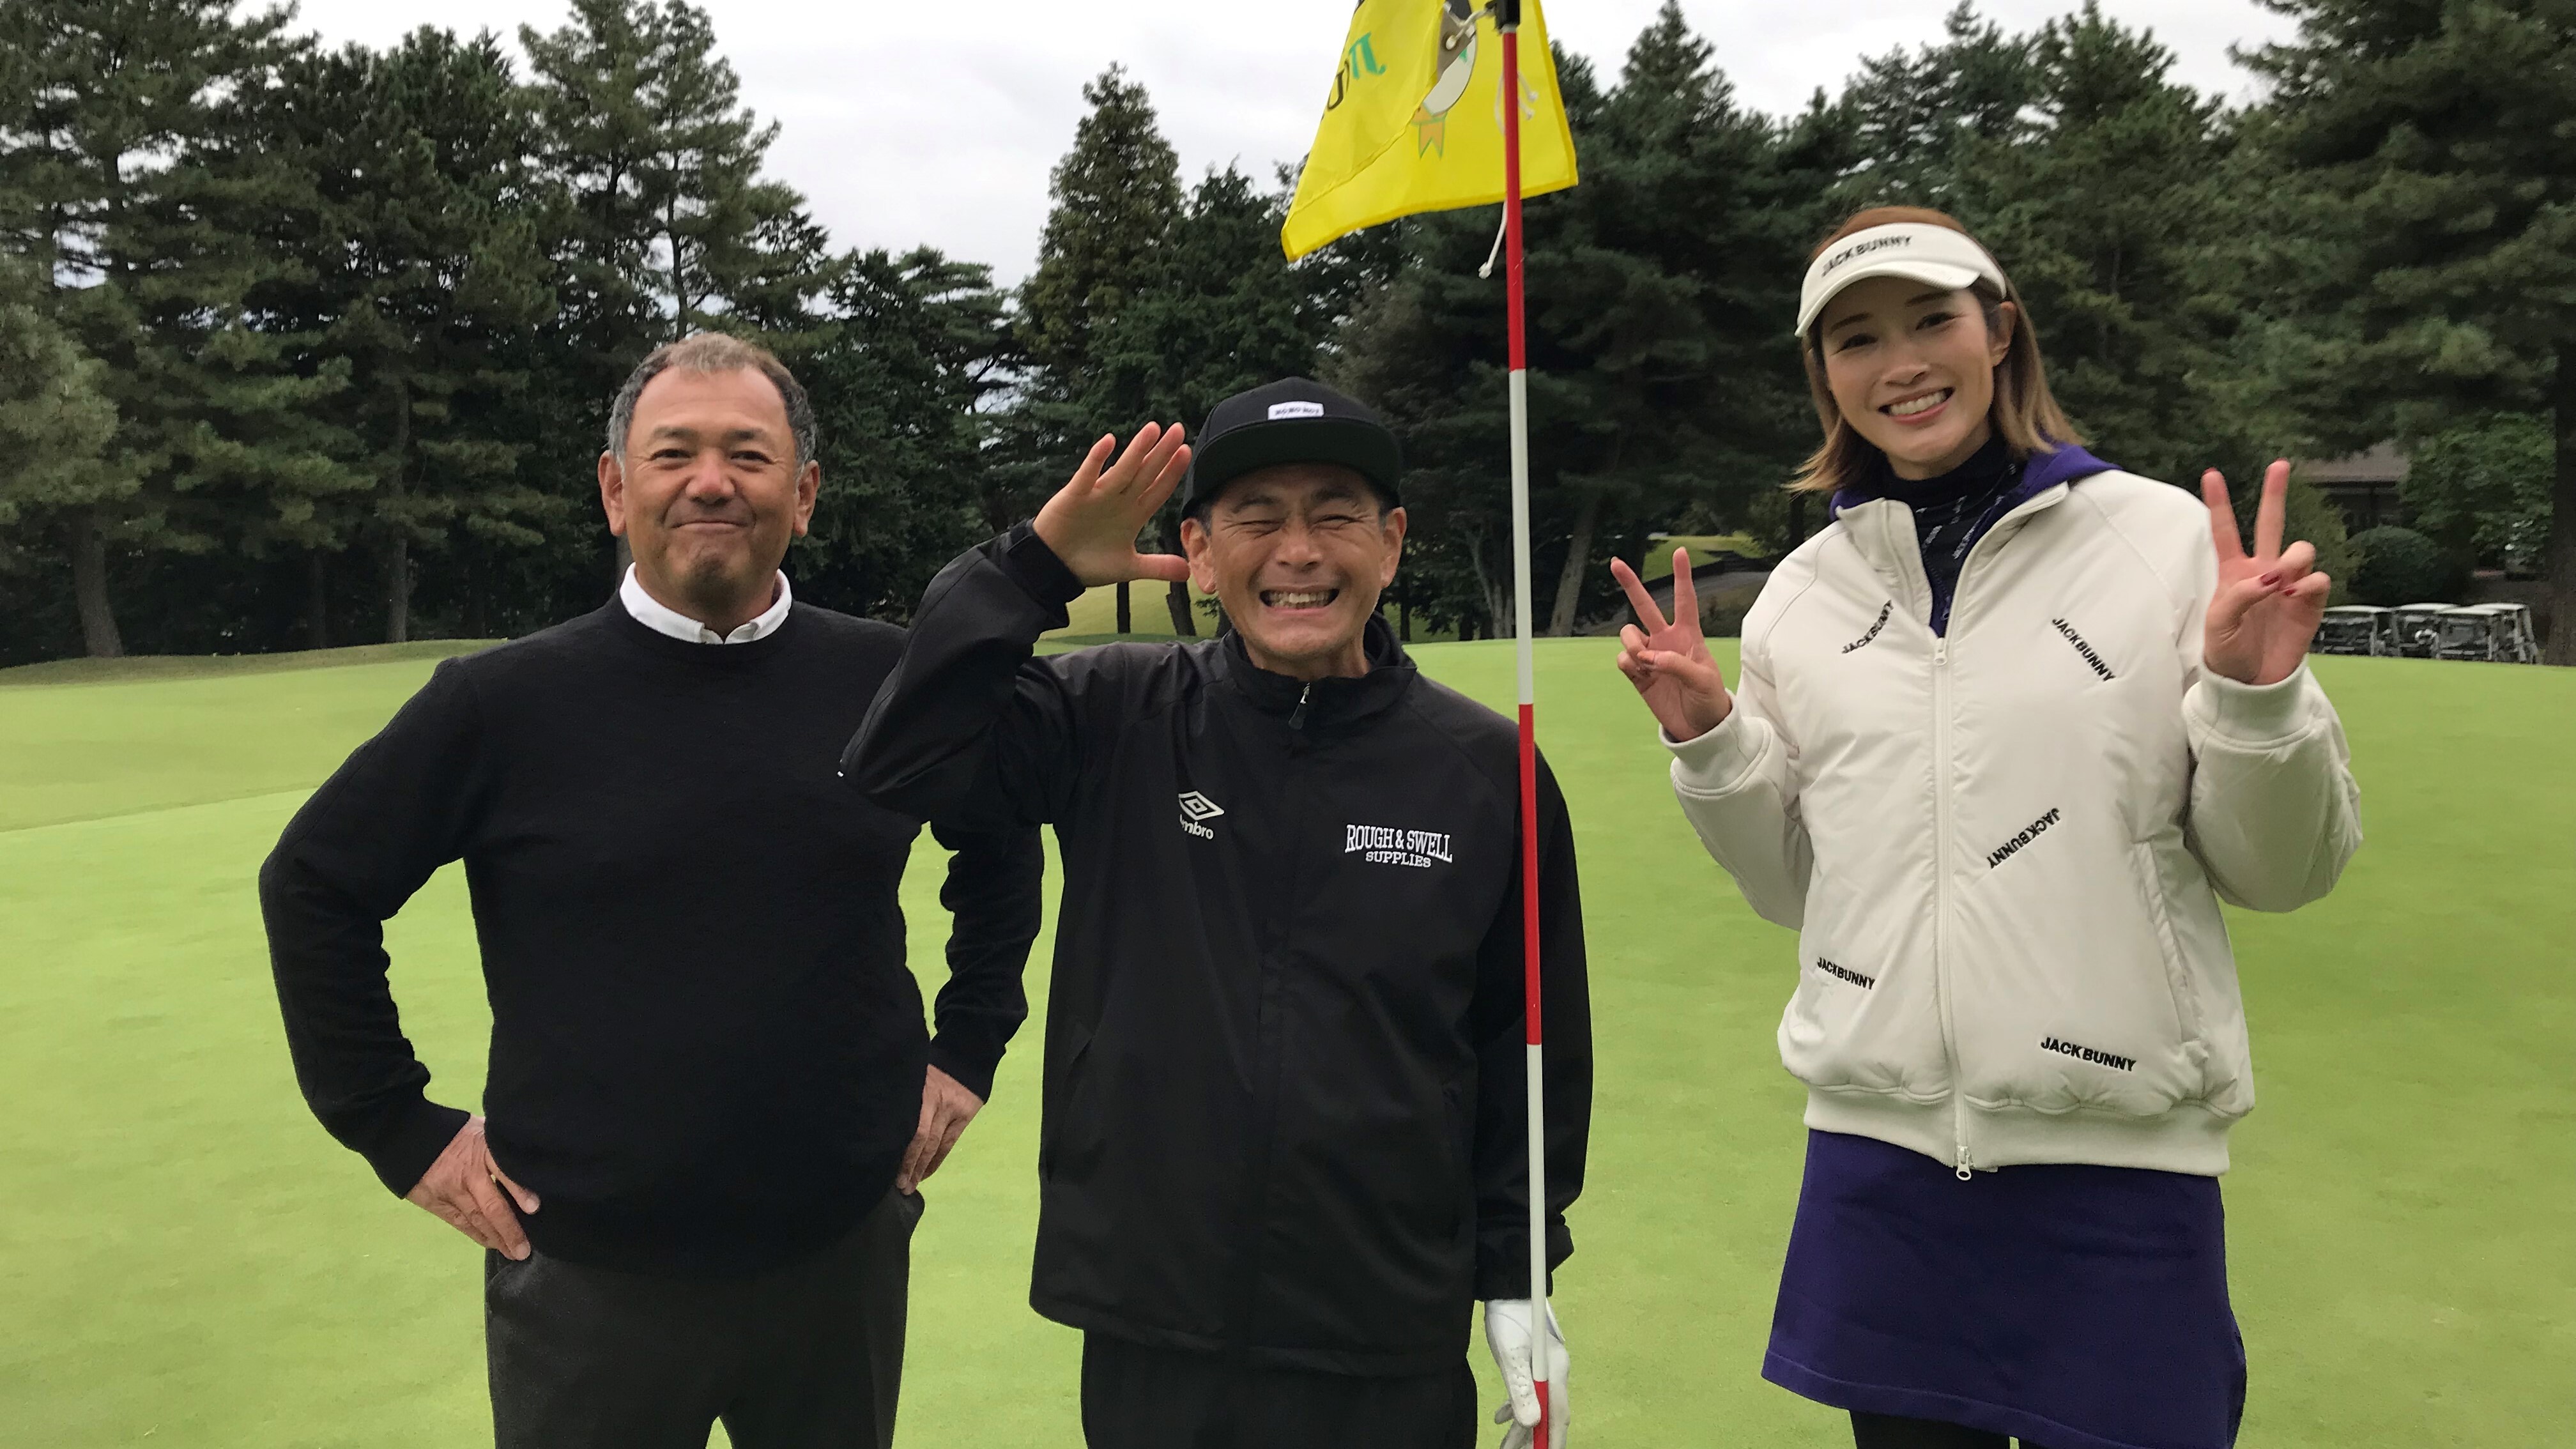 ゴルフネットワーク 日本唯一のゴルフ専門チャンネル